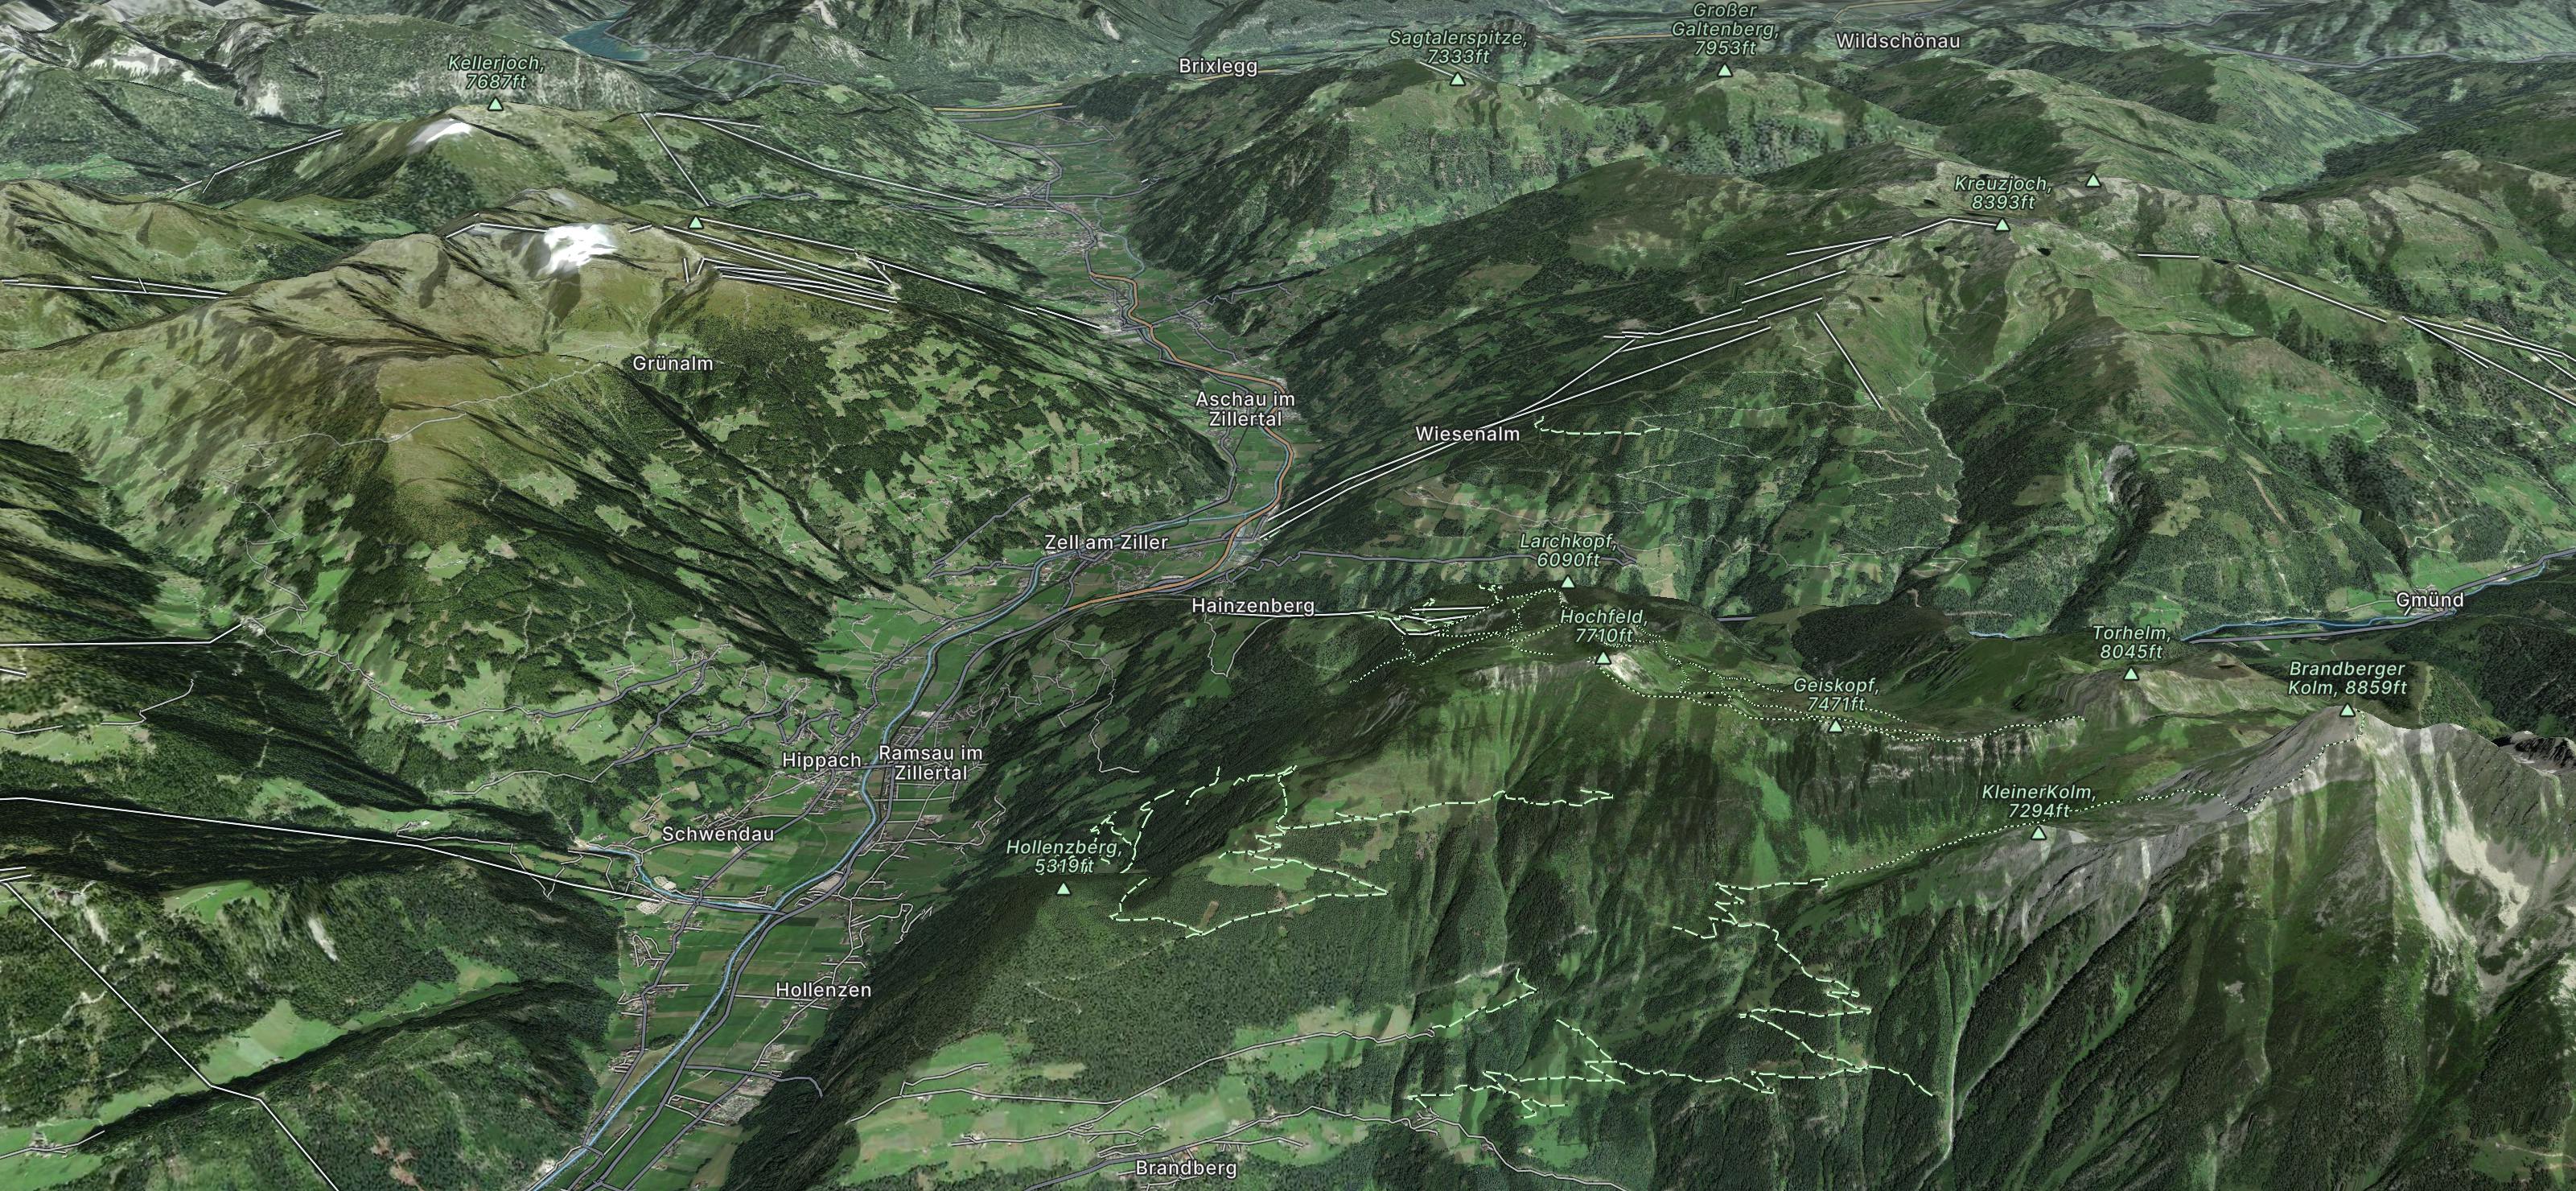 Gerlosstein / Hainzenberg Map